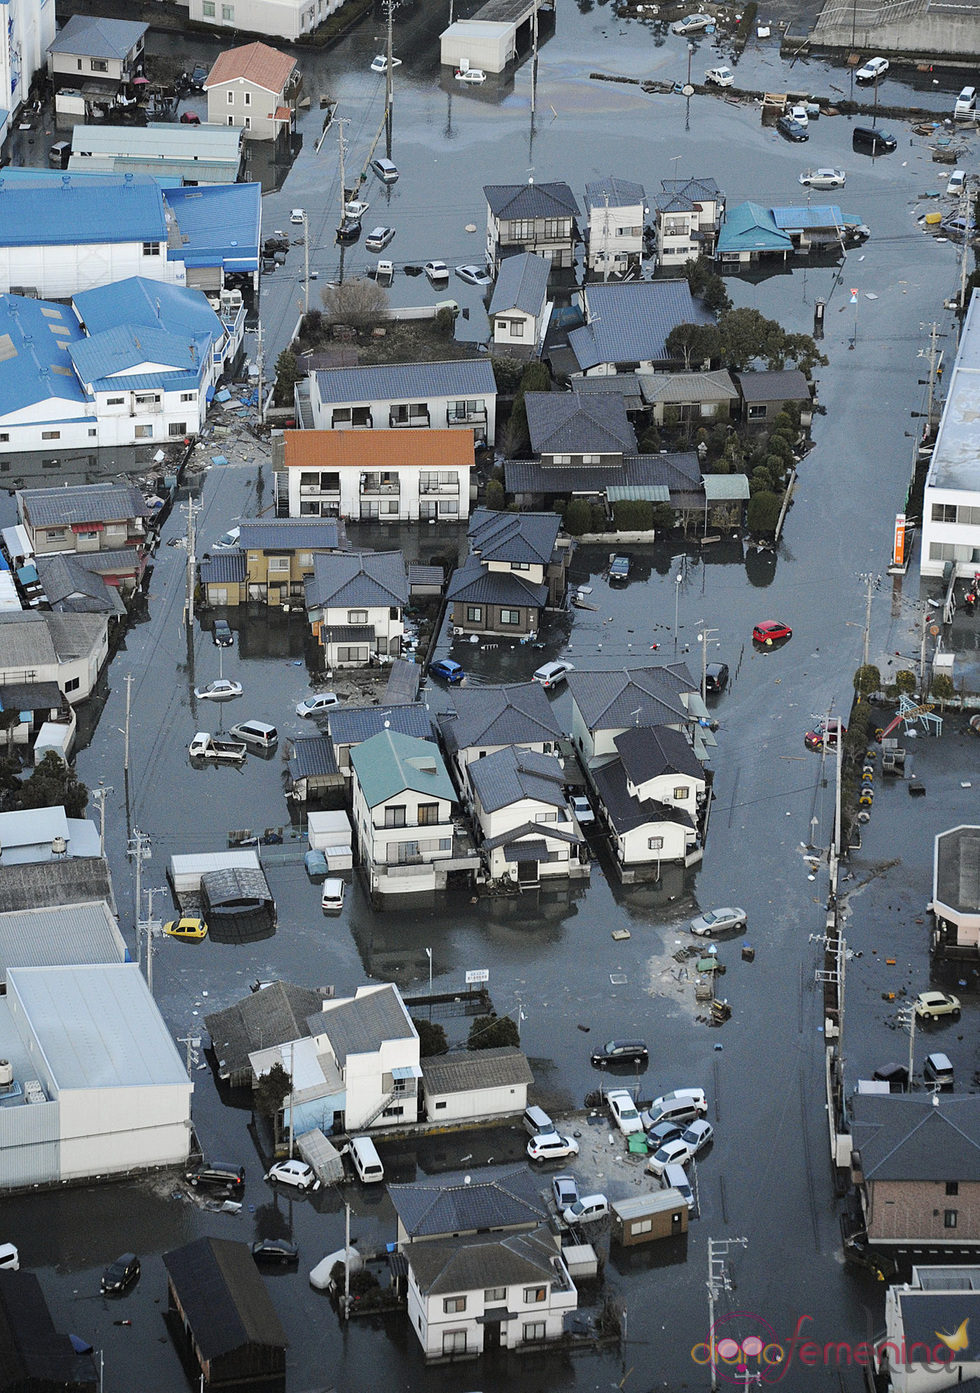 Casas inundadas por el tsunami de Japón